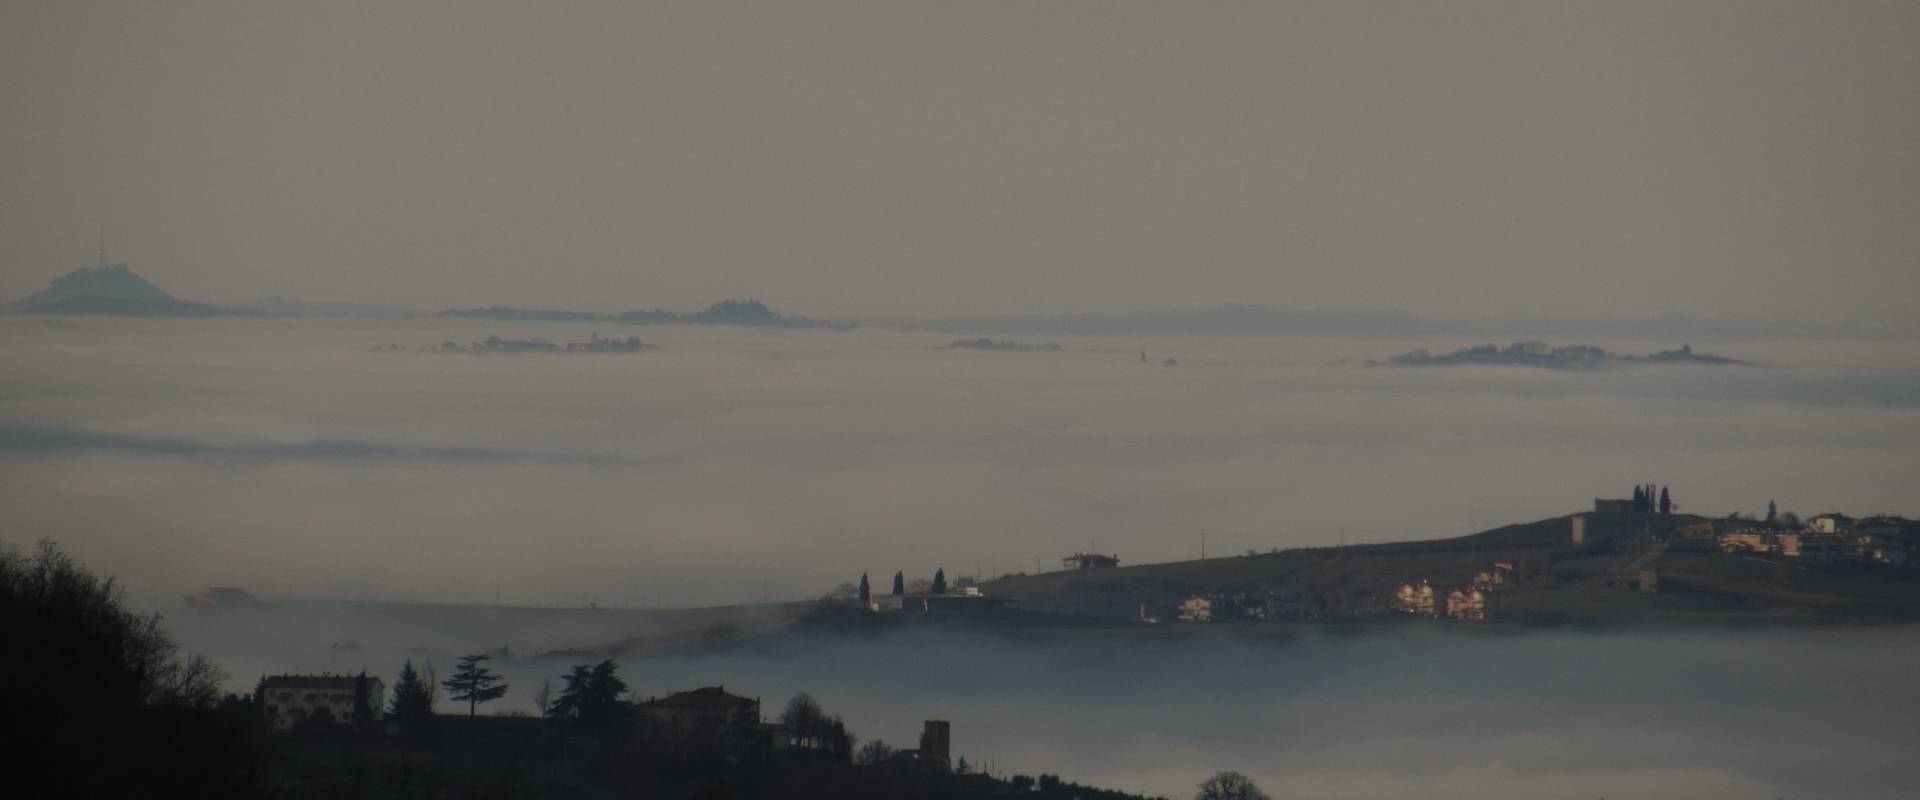 Una vista unica con la nebbia photo by Larabraga19